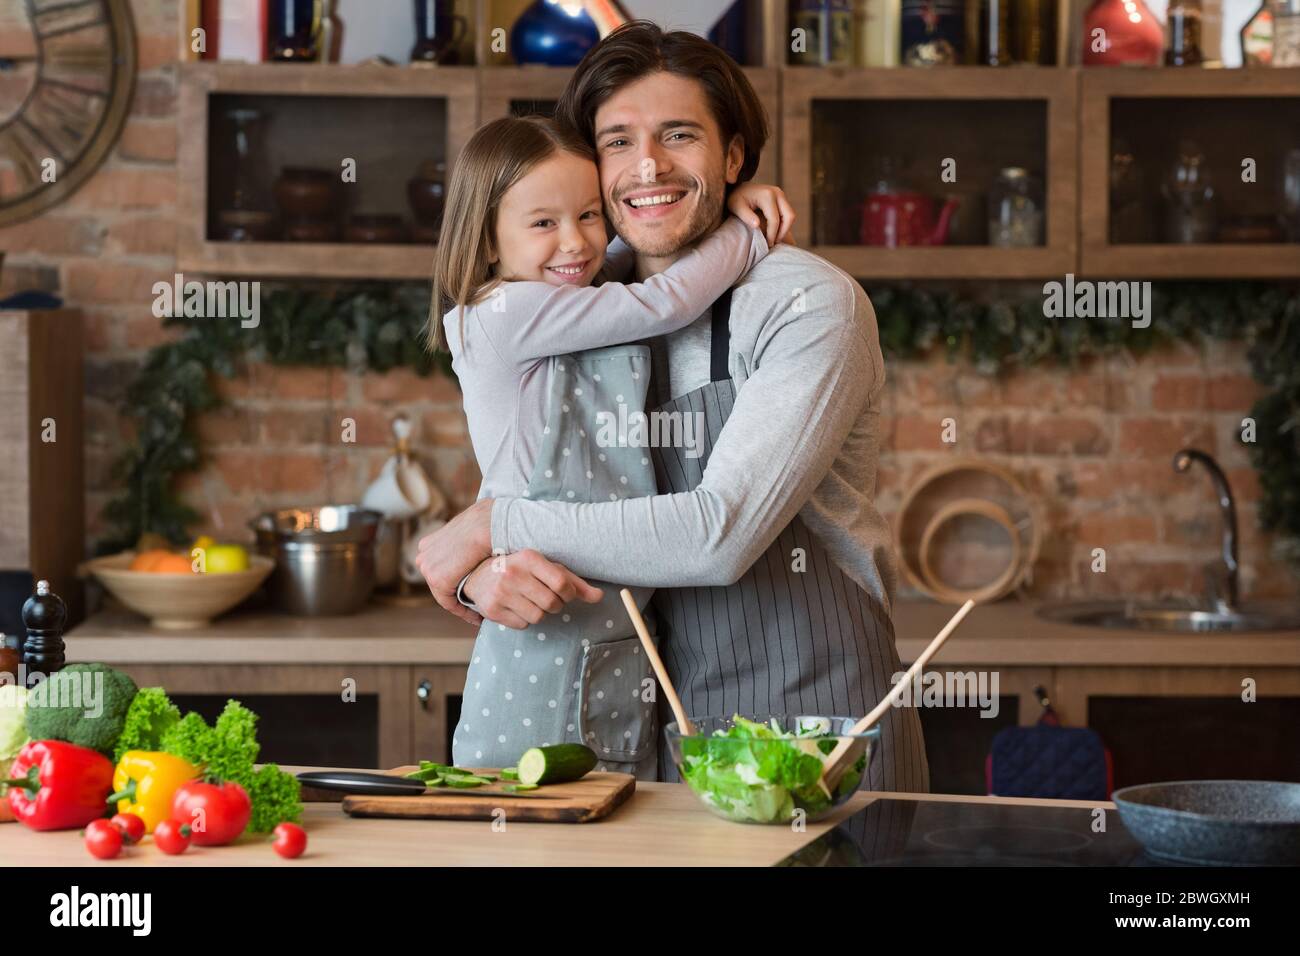 Amour de famille. Une petite fille gaie qui s'embrasse avec son père heureux dans la cuisine Banque D'Images